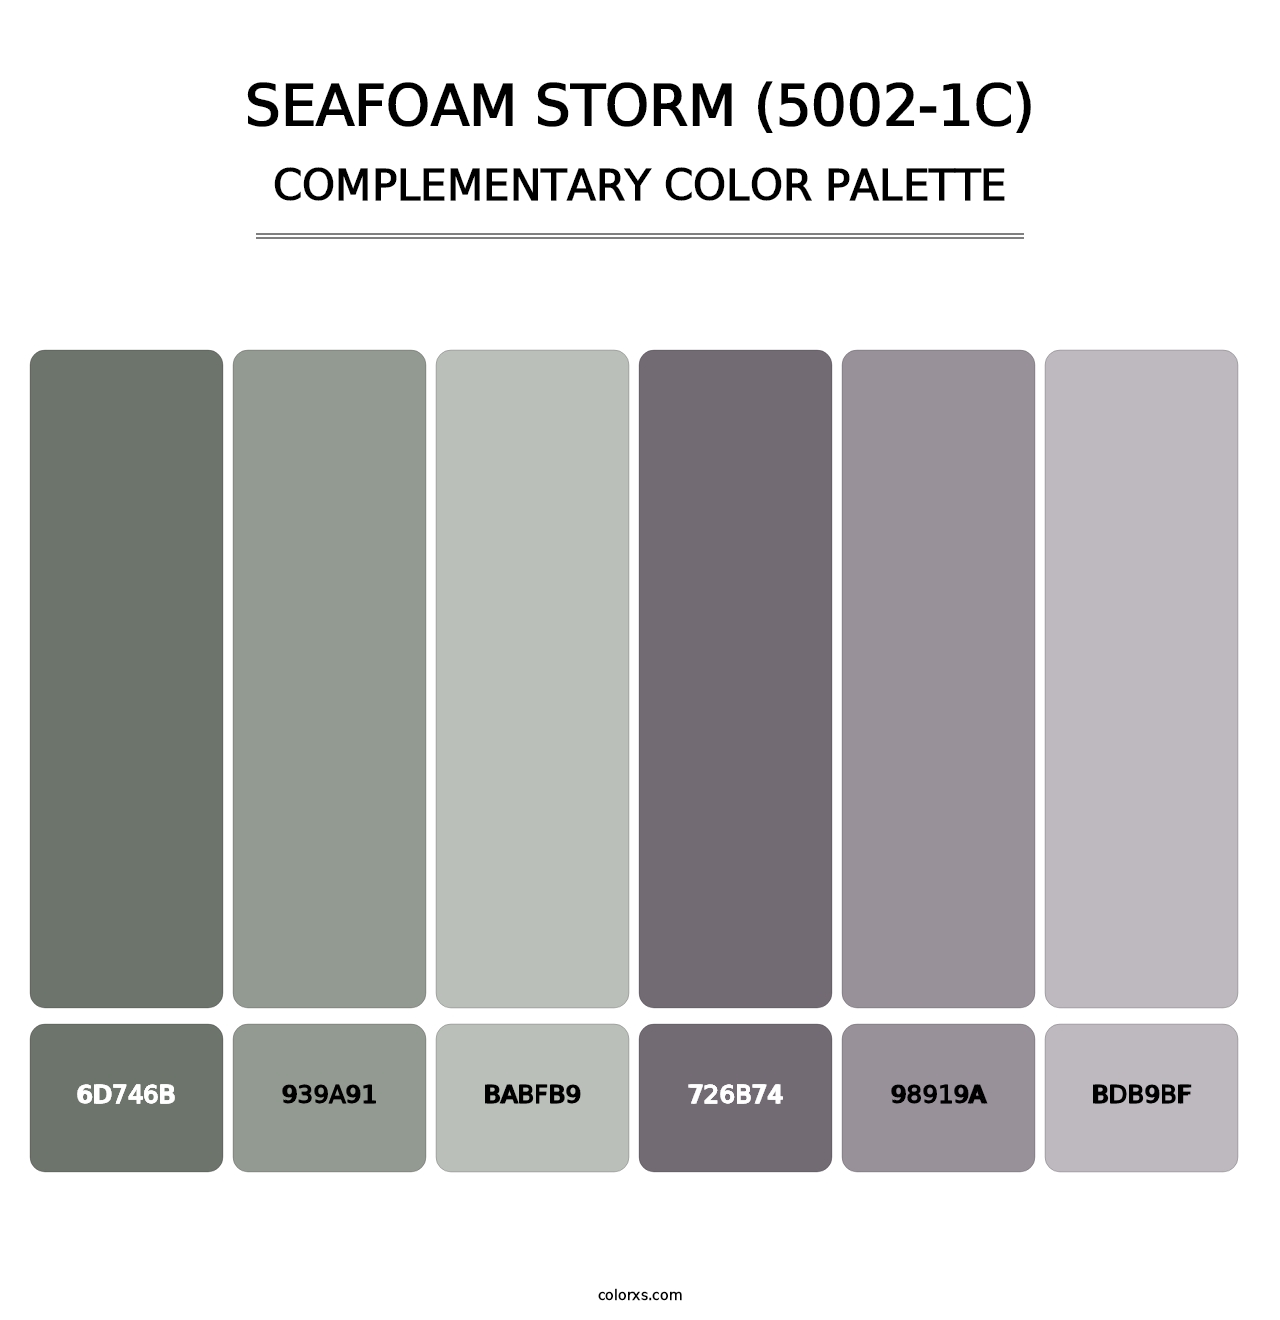 Seafoam Storm (5002-1C) - Complementary Color Palette